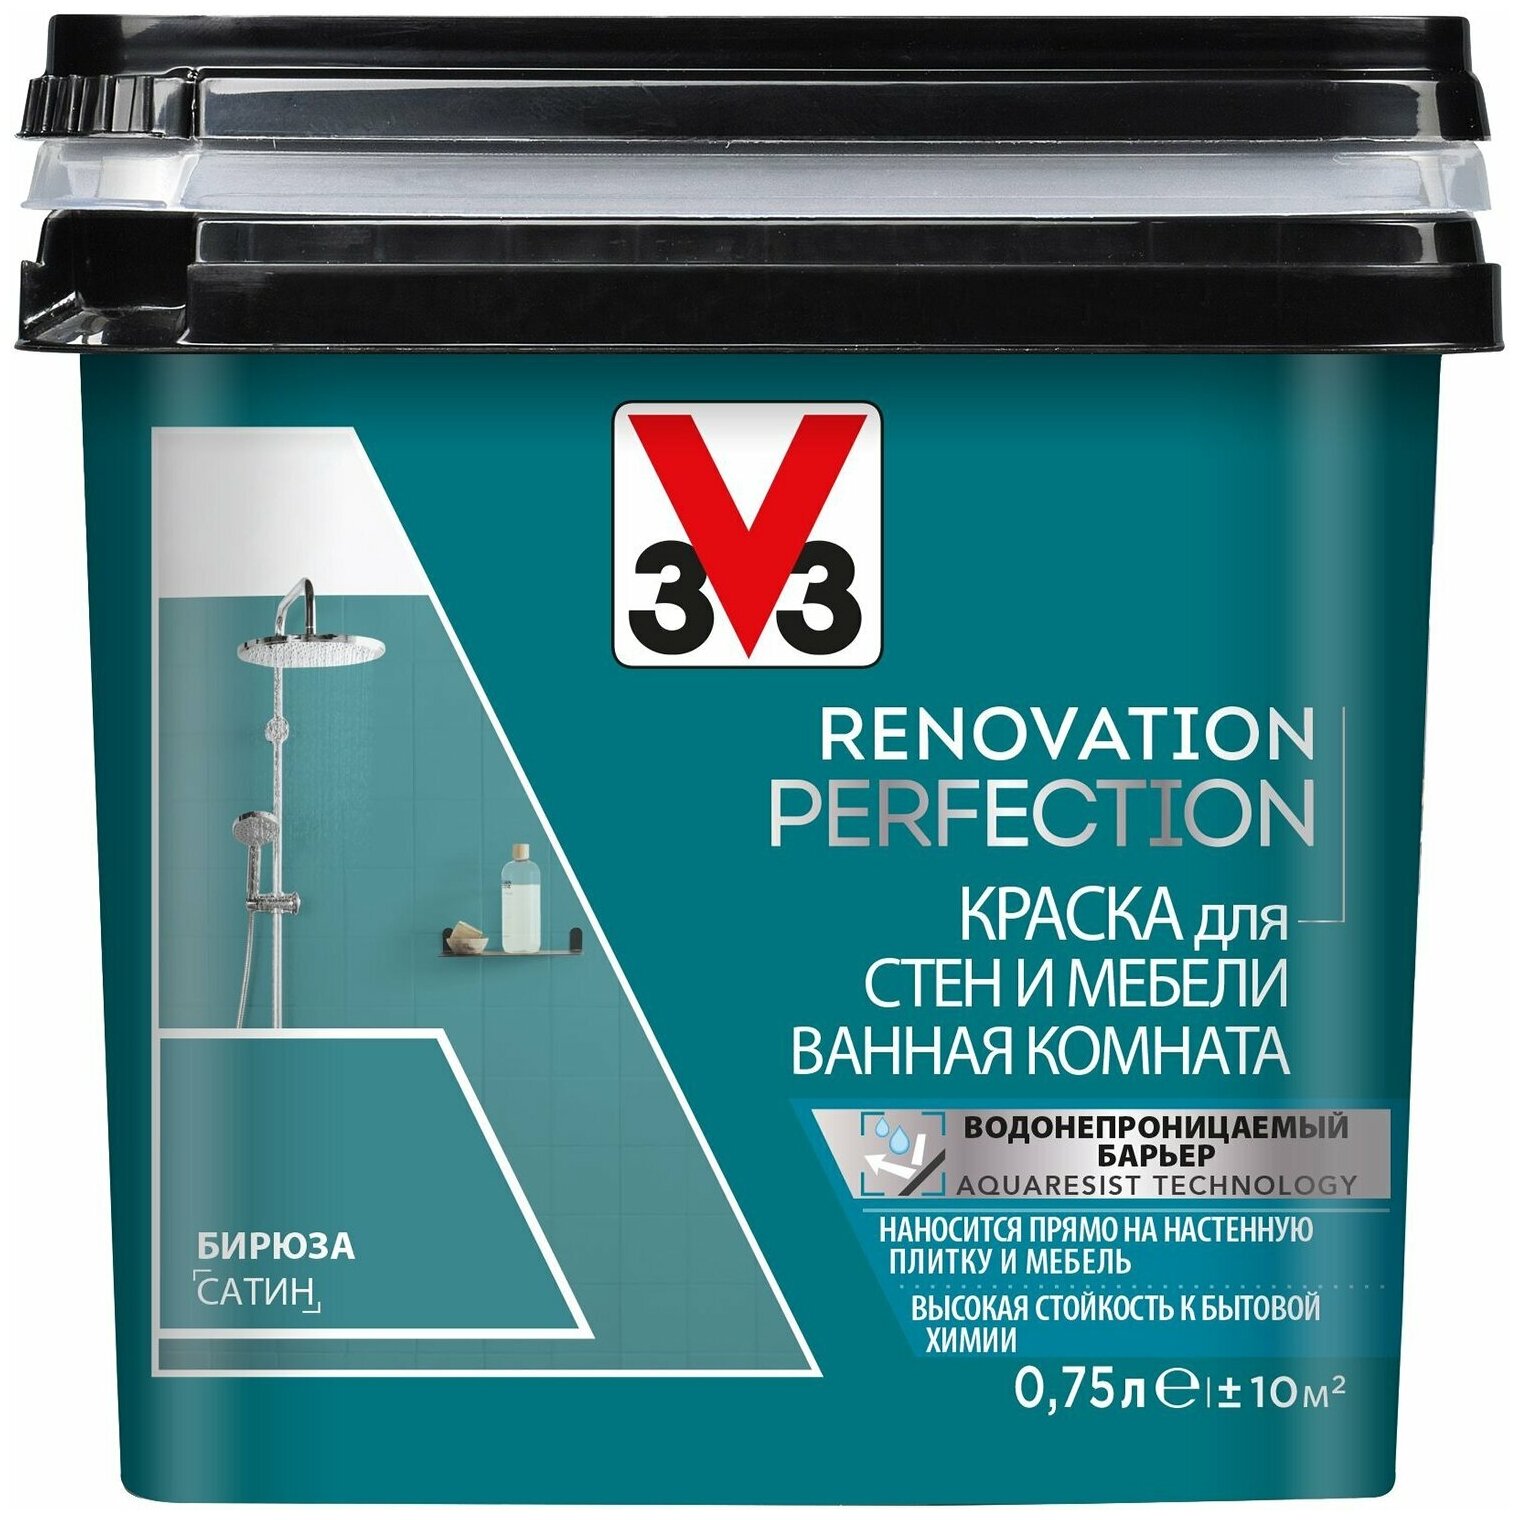 Краска для стен и мебели ванная комната RENOVATION perfection-бирюза-.750 л